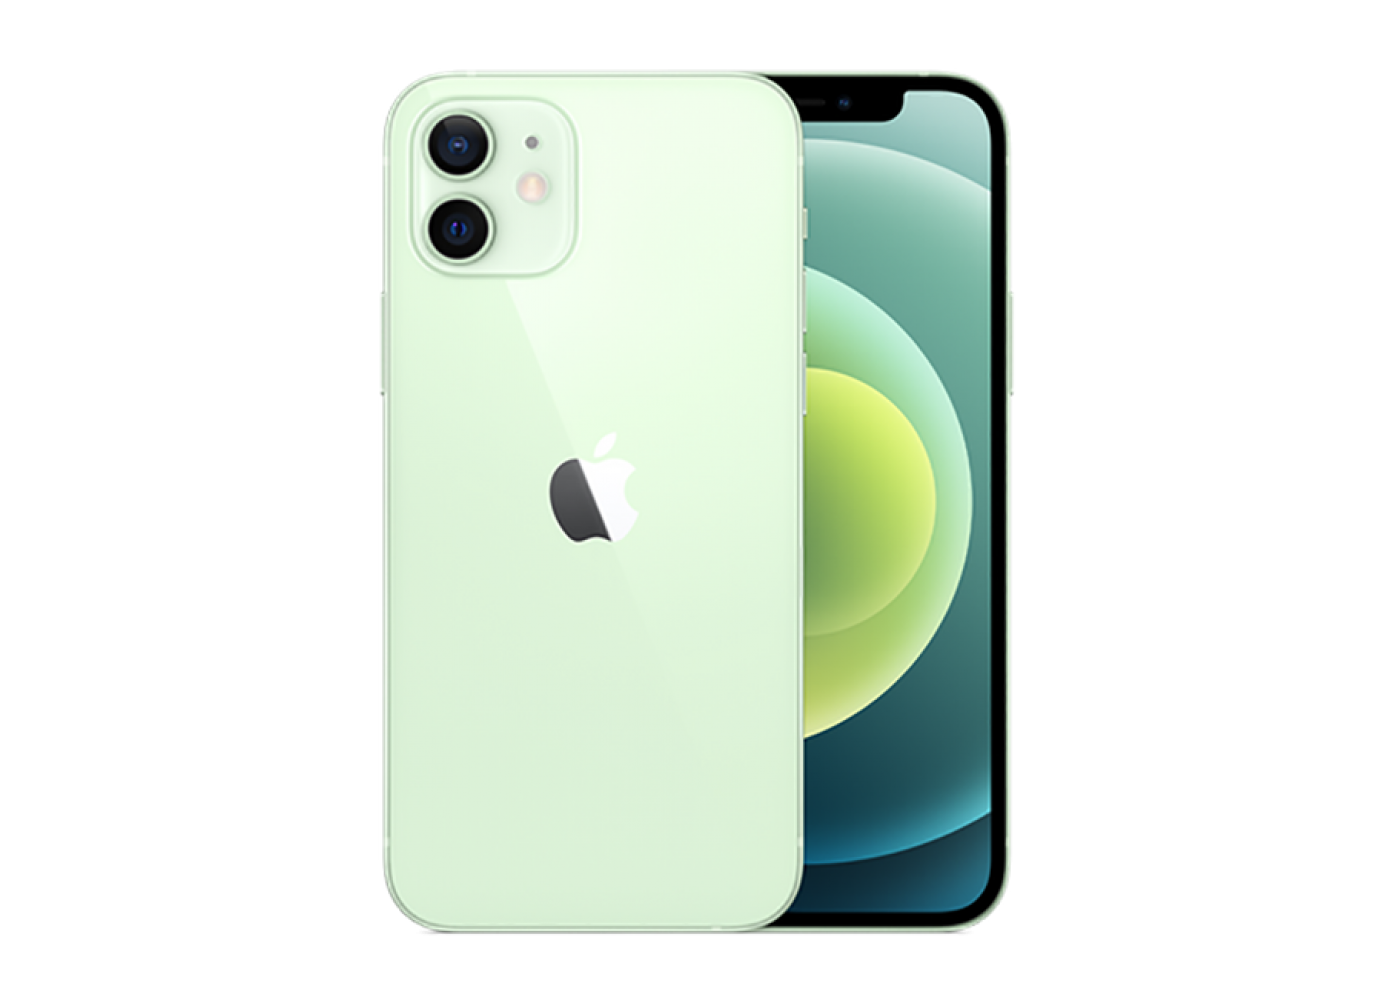 Смартфон Apple iPhone 12 mini 64Gb Green